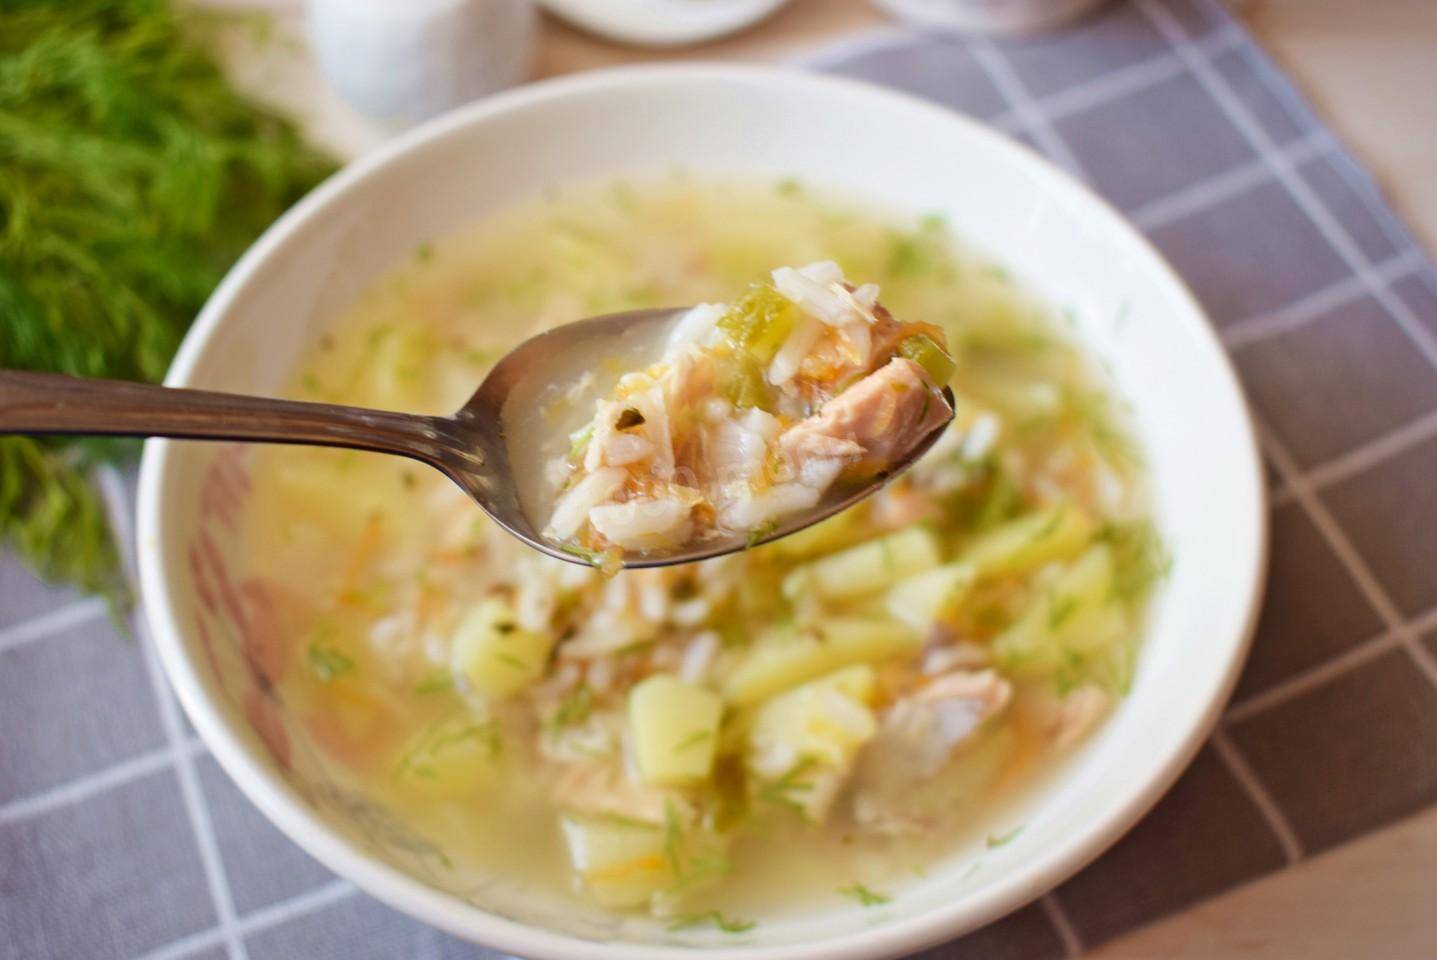 Рыбный суп из консервов - быстрый и недорогой способ вкусно накормить семью: рецепт с фото и видео